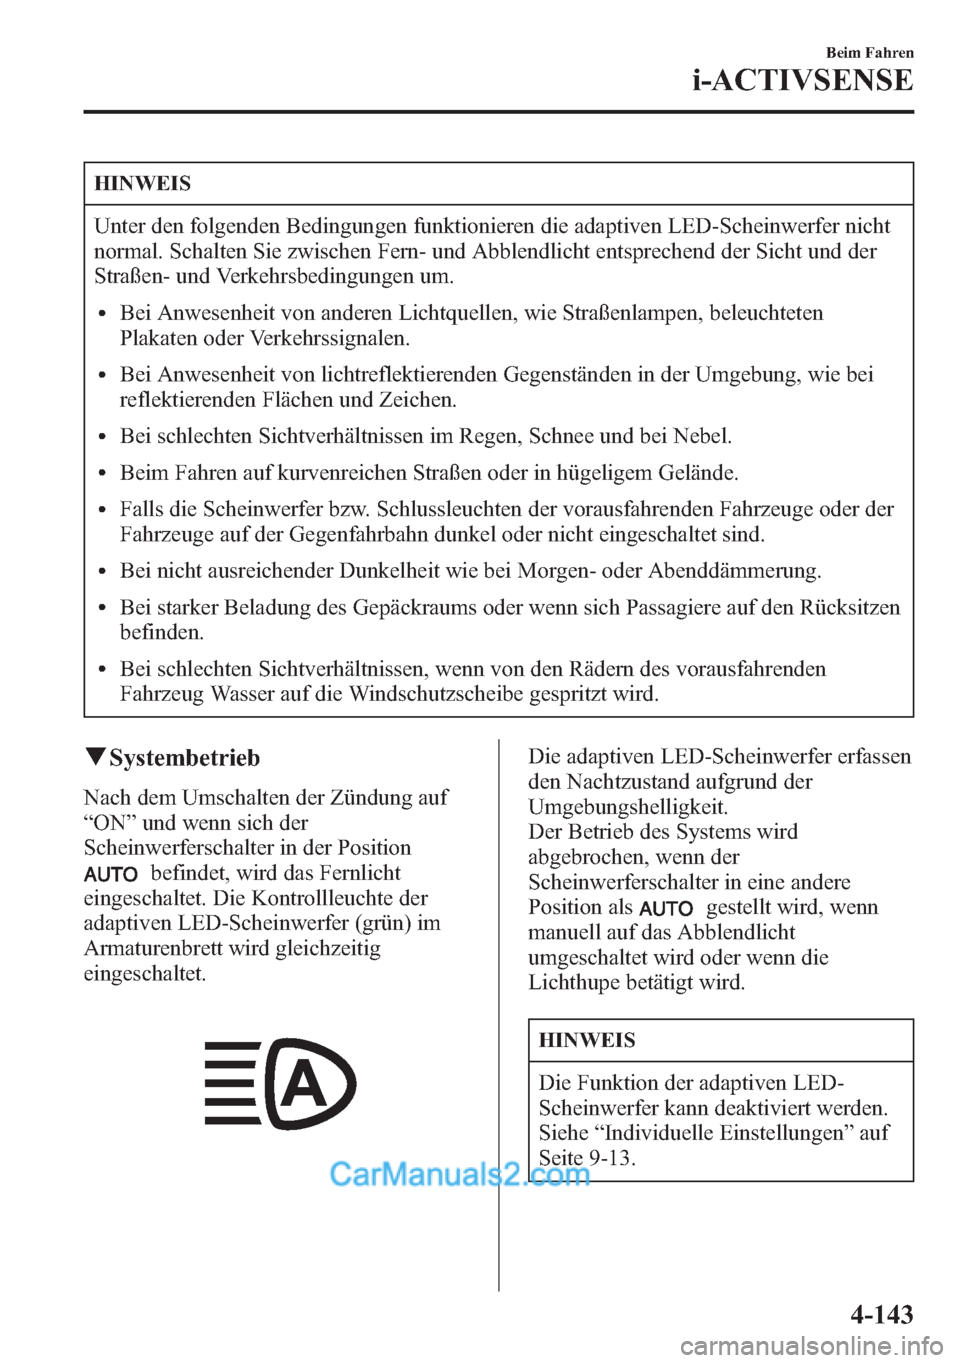 MAZDA MODEL CX-5 2015  Betriebsanleitung (in German) HINWEIS
Unter den folgenden Bedingungen funktionieren die adaptiven LED-Scheinwerfer nicht
normal. Schalten Sie zwischen Fern- und Abblendlicht entsprechend der Sicht und der
Straßen- und Verkehrsbed